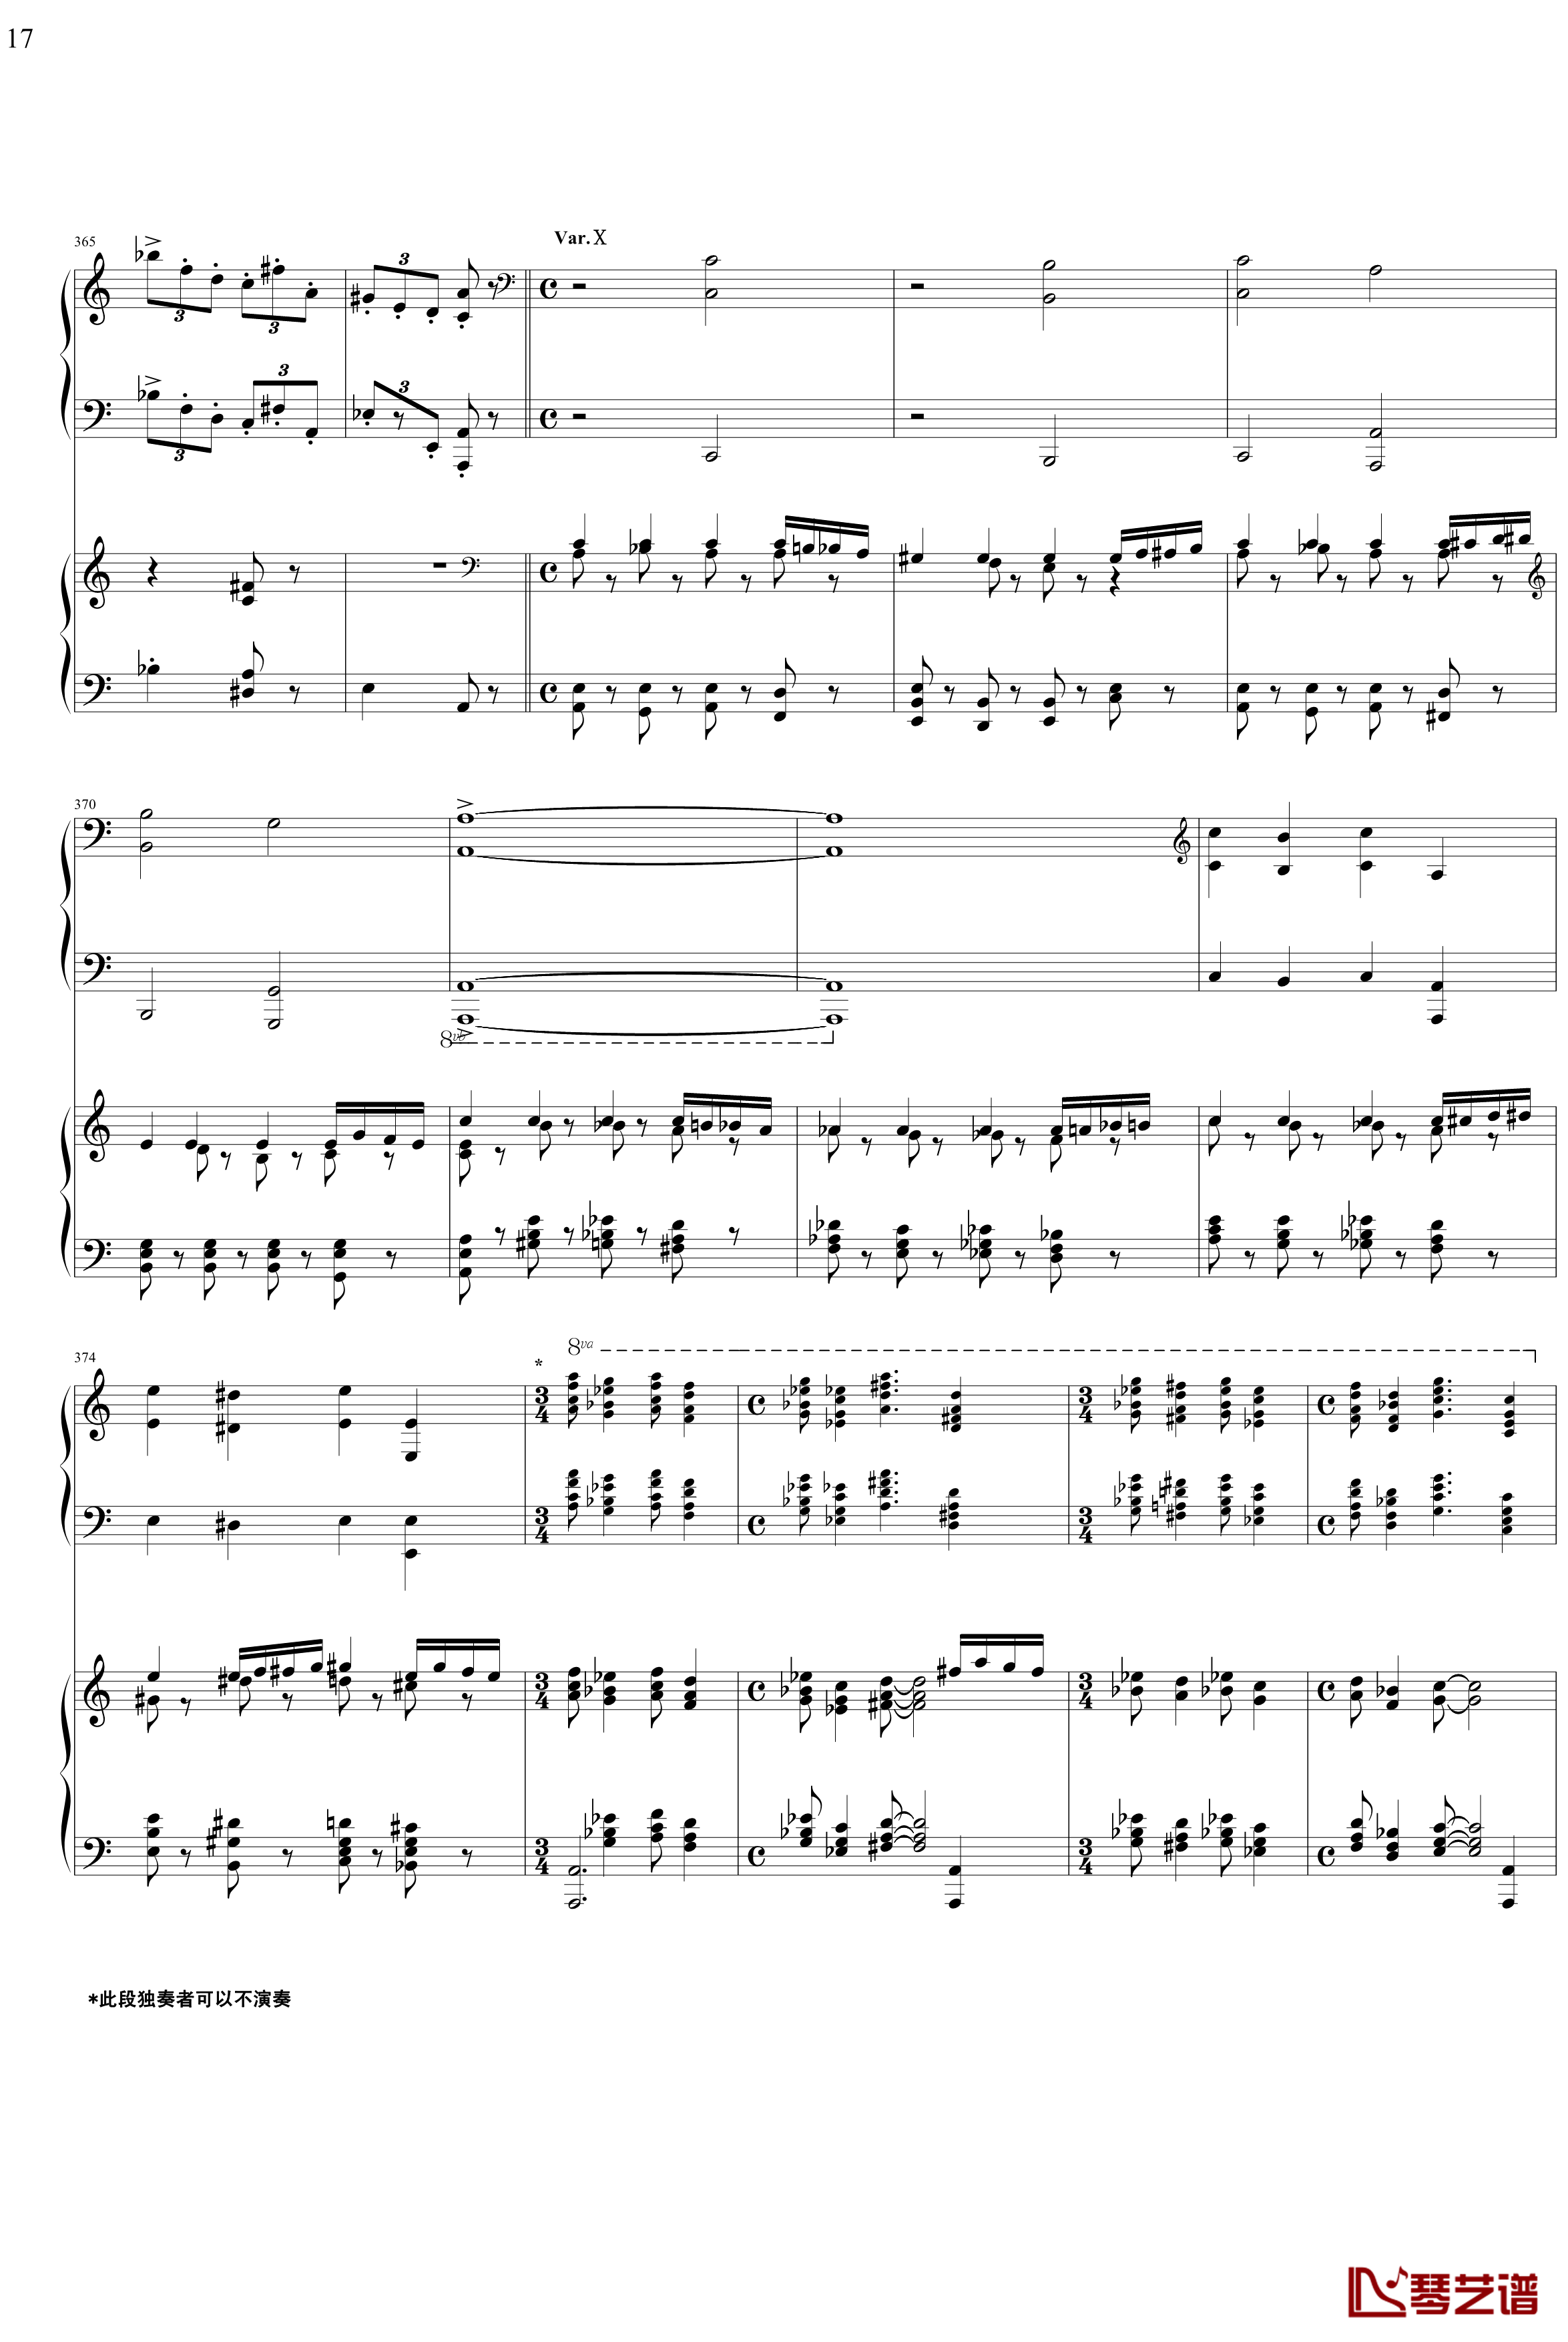 帕格尼主题狂想曲钢琴谱-1~10变奏-拉赫马尼若夫17